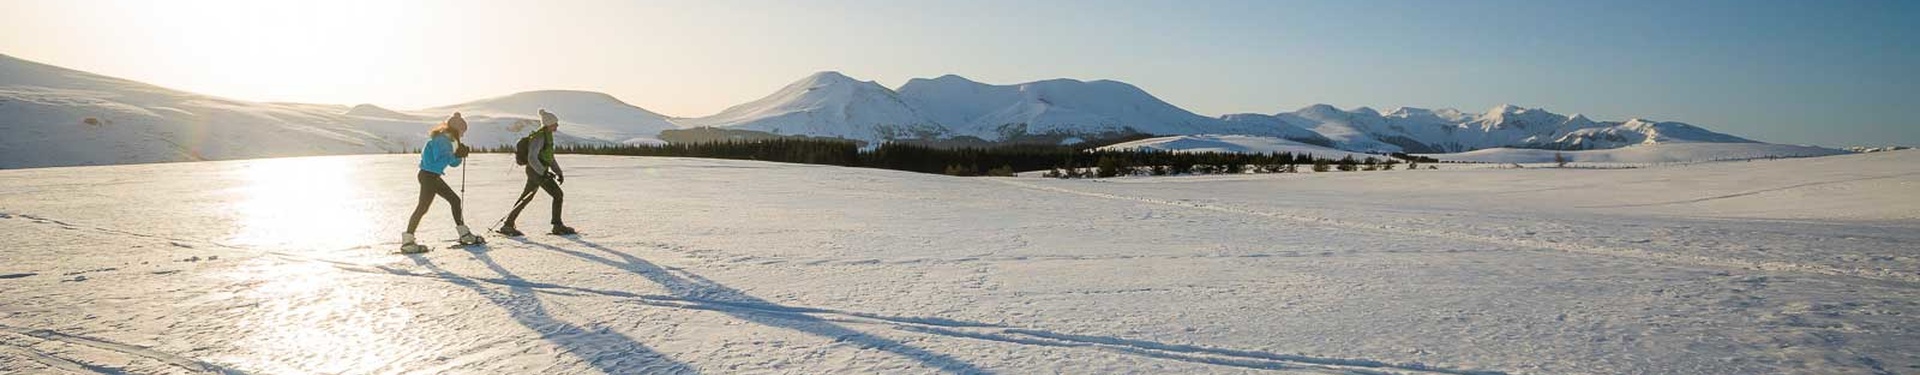 Randonnée hivernale, raquettes et ski nordique en France et à l'étranger